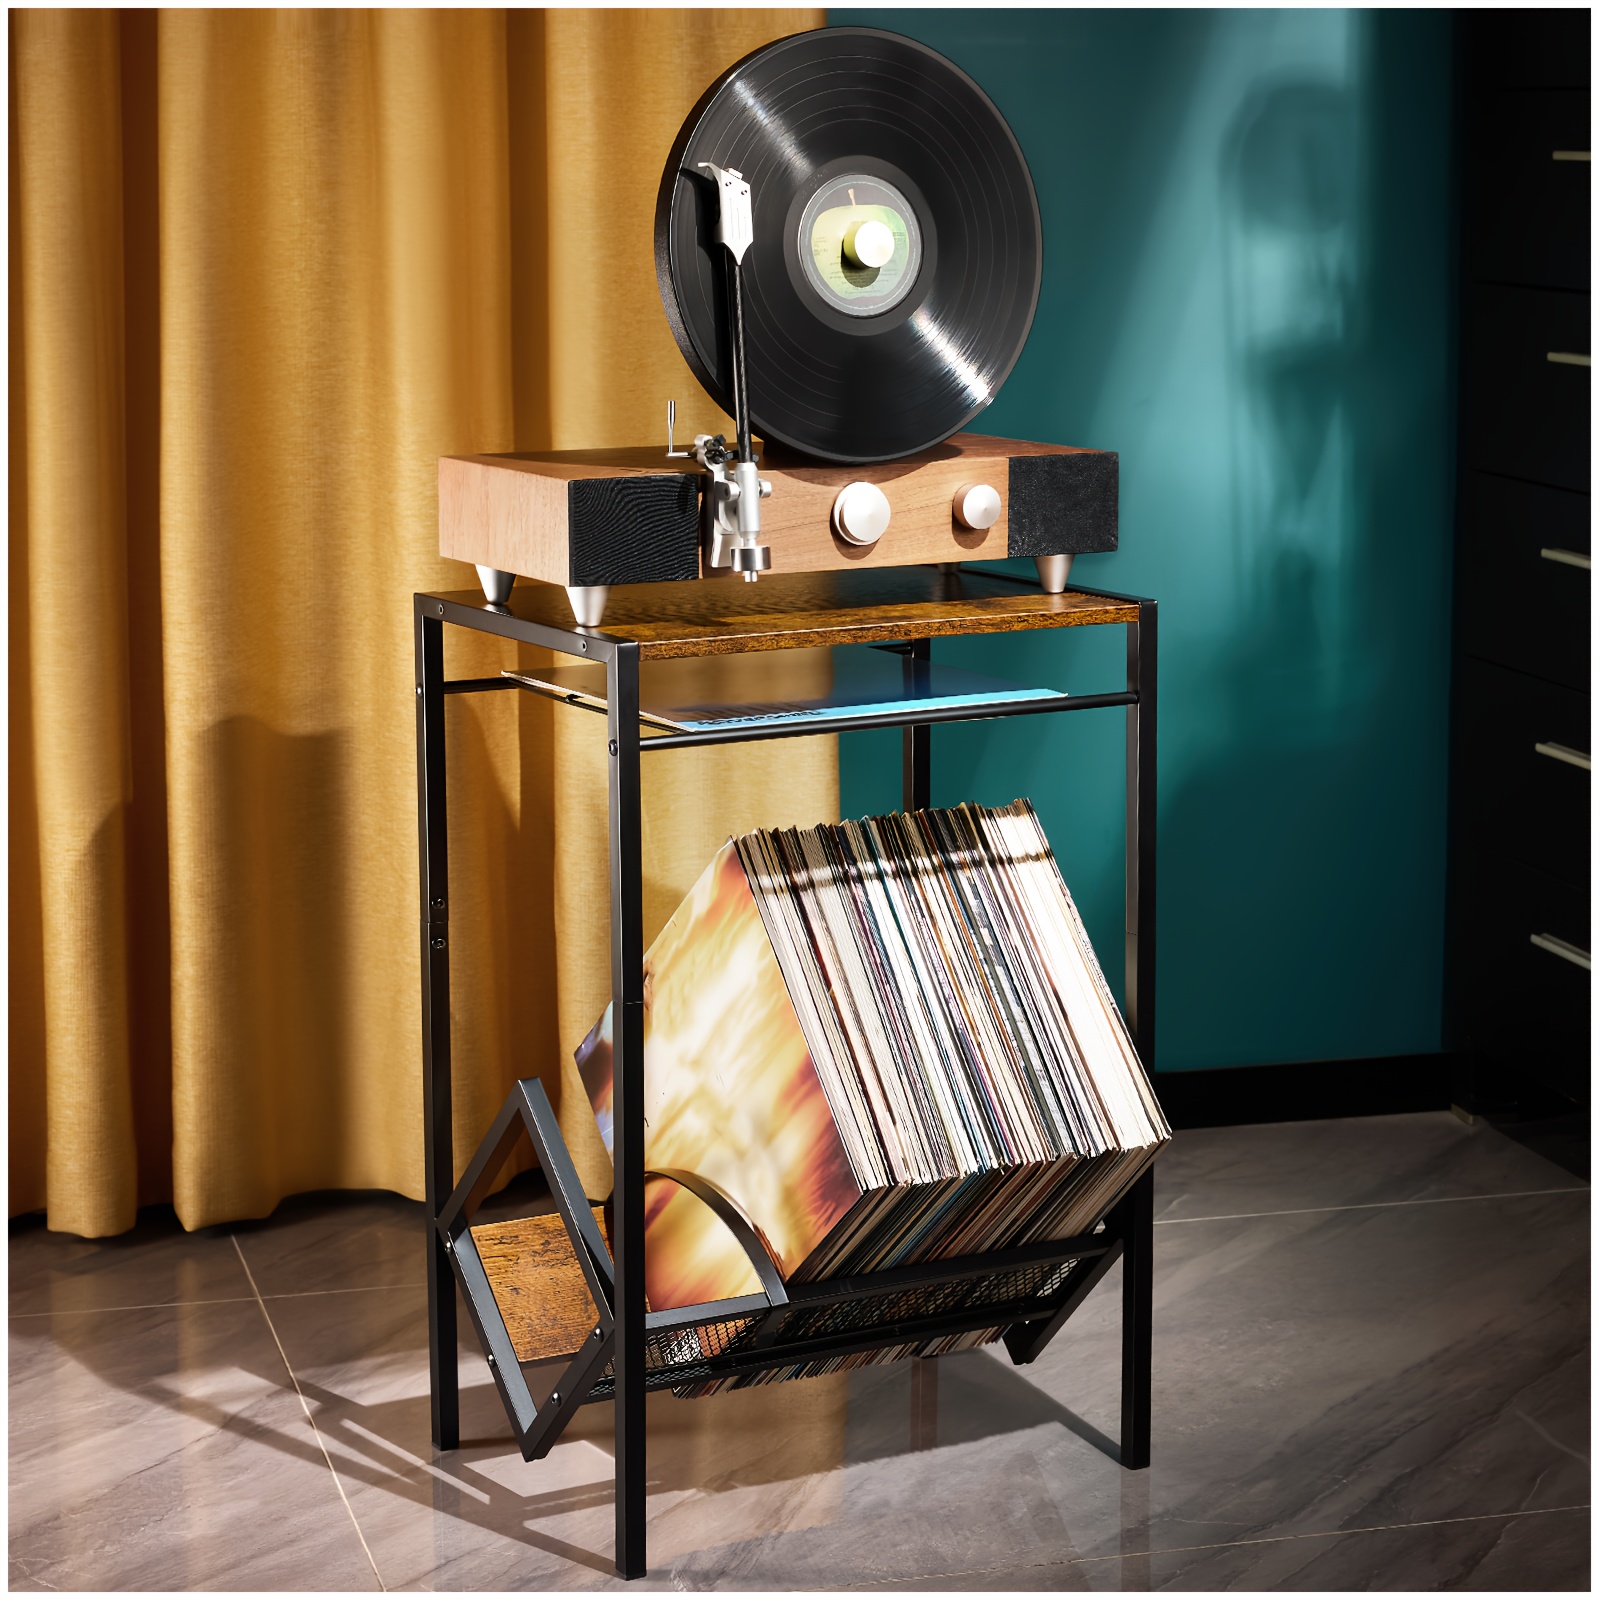 Tourne disque rétro – Concept store Le 805